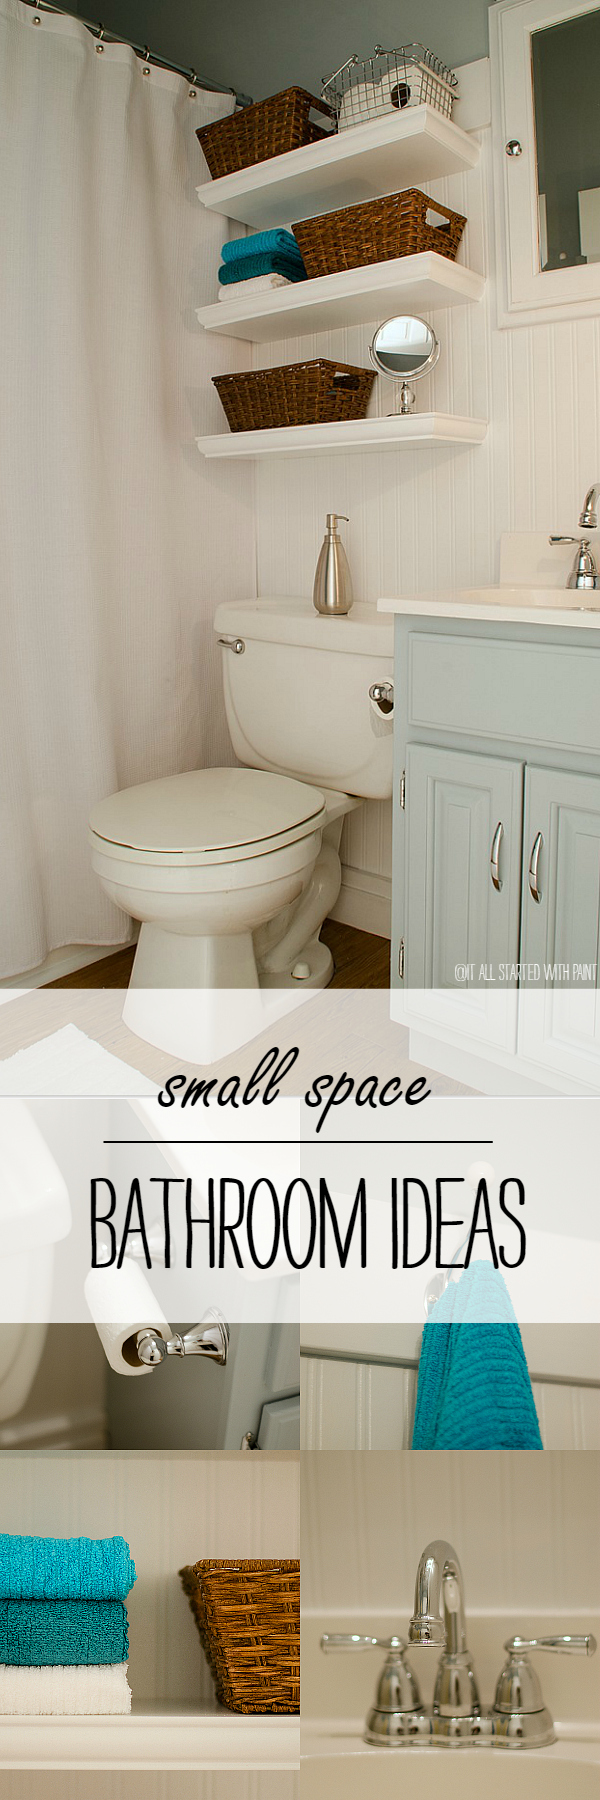 Small Bathroom Design, Organization Ideas